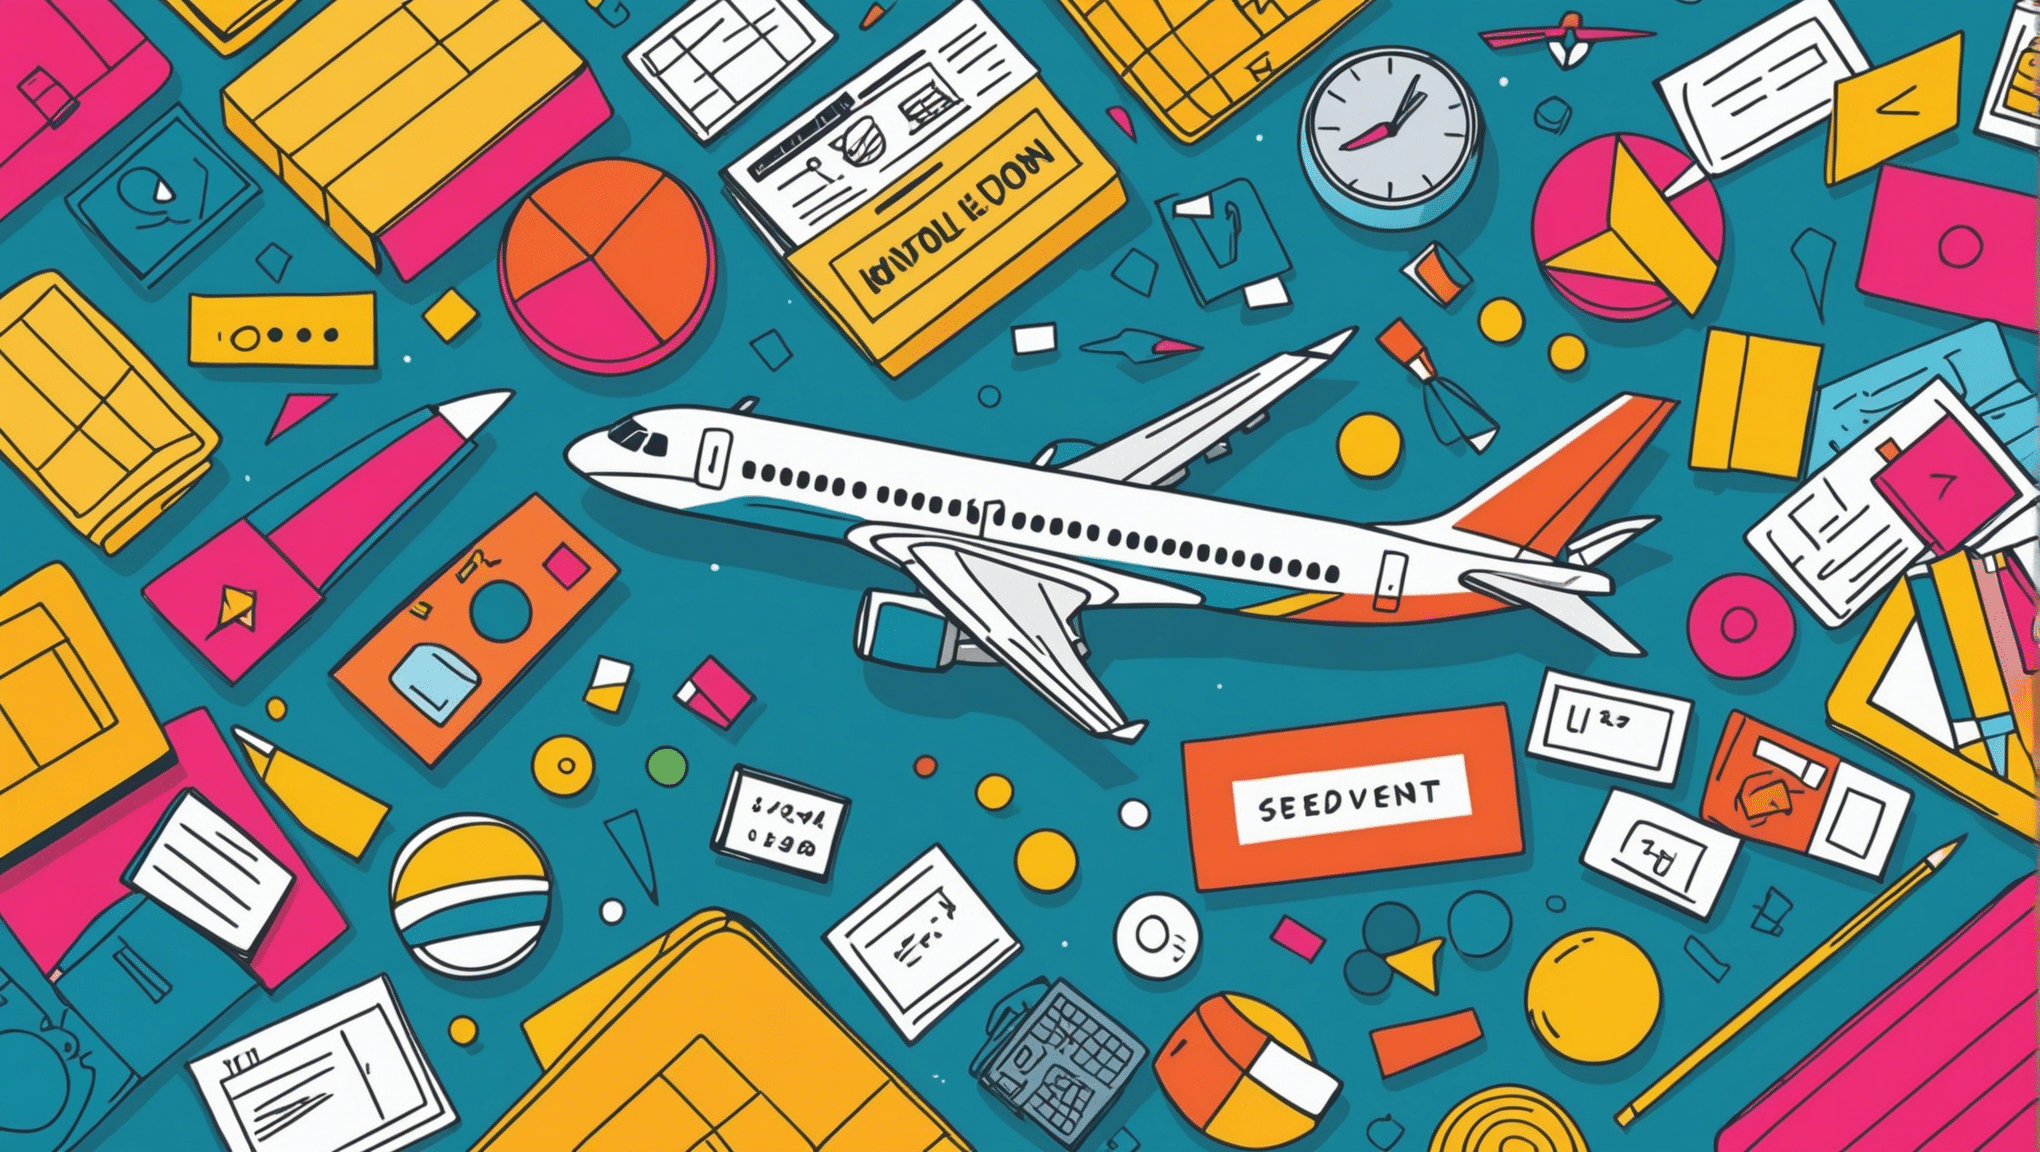 Finden Sie mit unseren praktischen Ratschlägen heraus, wann Sie zum besten Zeitpunkt ein Flugticket kaufen sollten, um auf Ihrer Reise zu sparen.